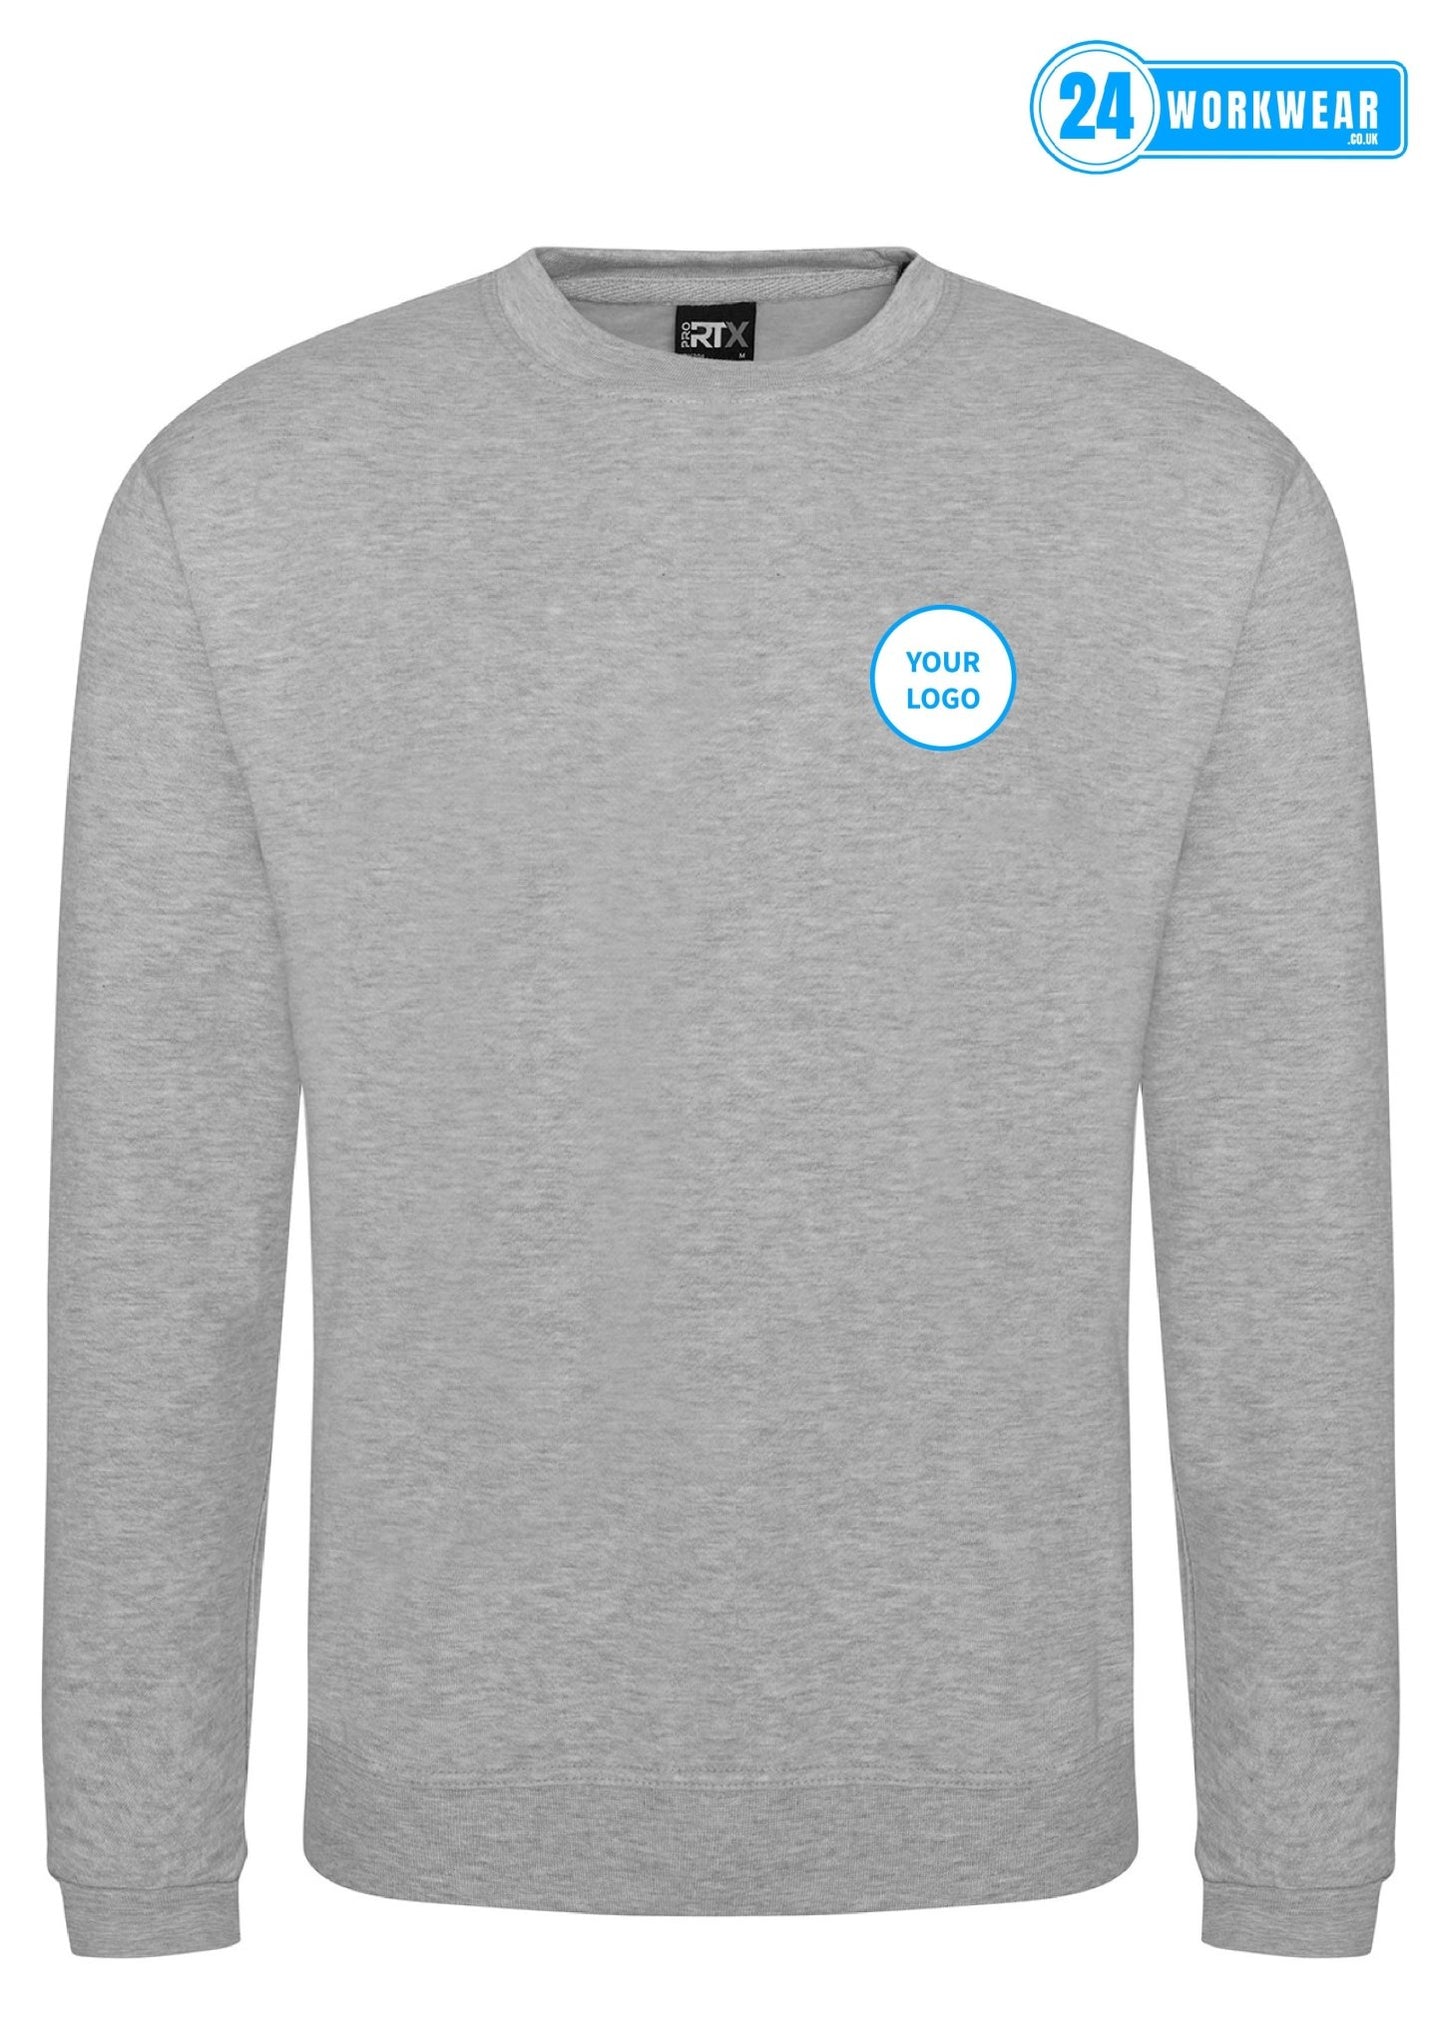 10 x Sweatshirts Deal - 24 Workwear - Sweatshirt